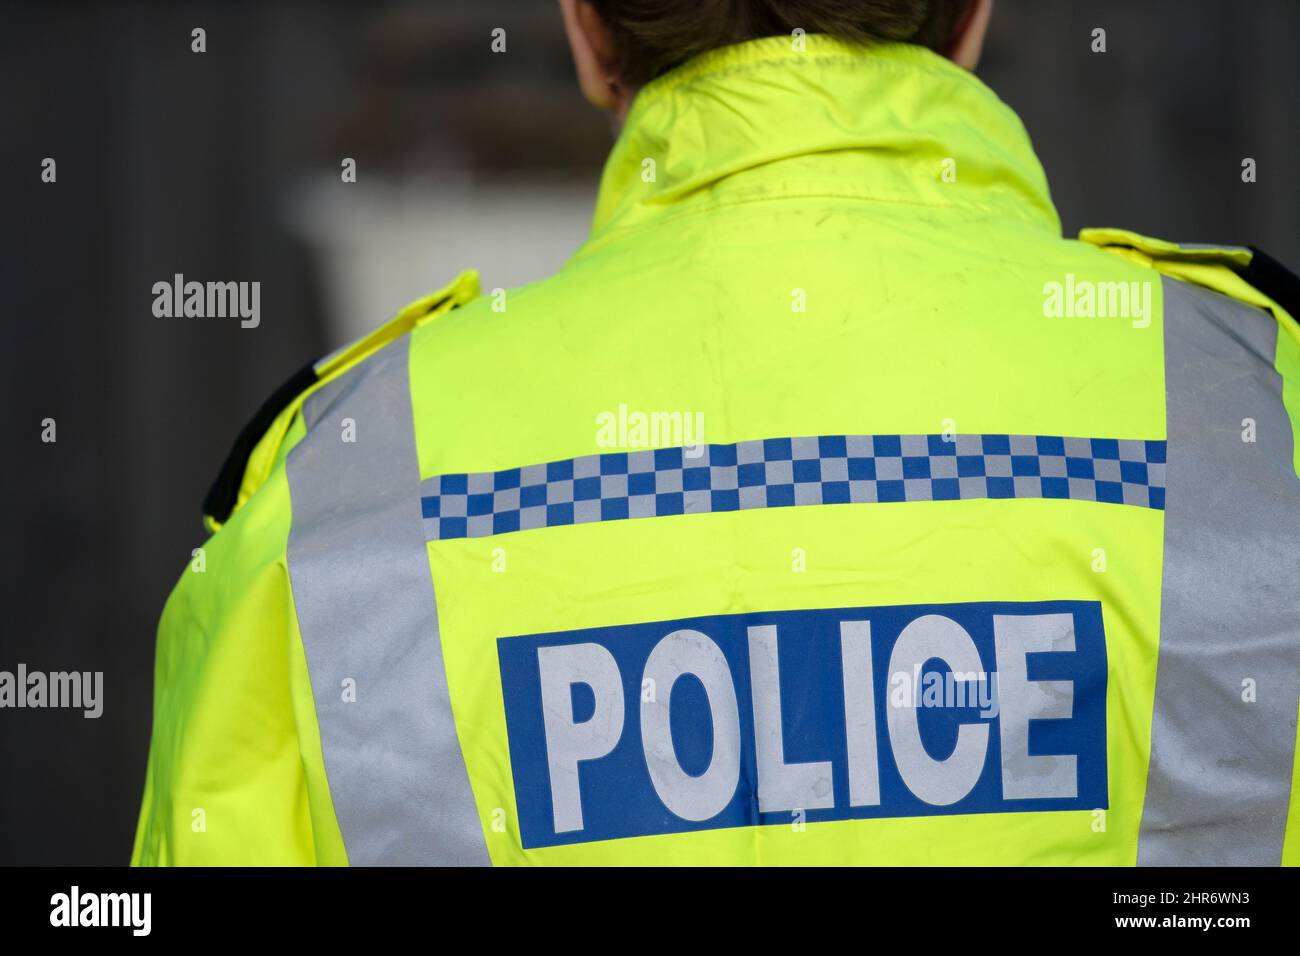 Un ufficiale di polizia femminile britannico che indossa una giacca riflettente ad alta visibilità. L'immagine mostra la parte posteriore dell'ufficiale e le indicazioni della polizia sono visibili Foto Stock